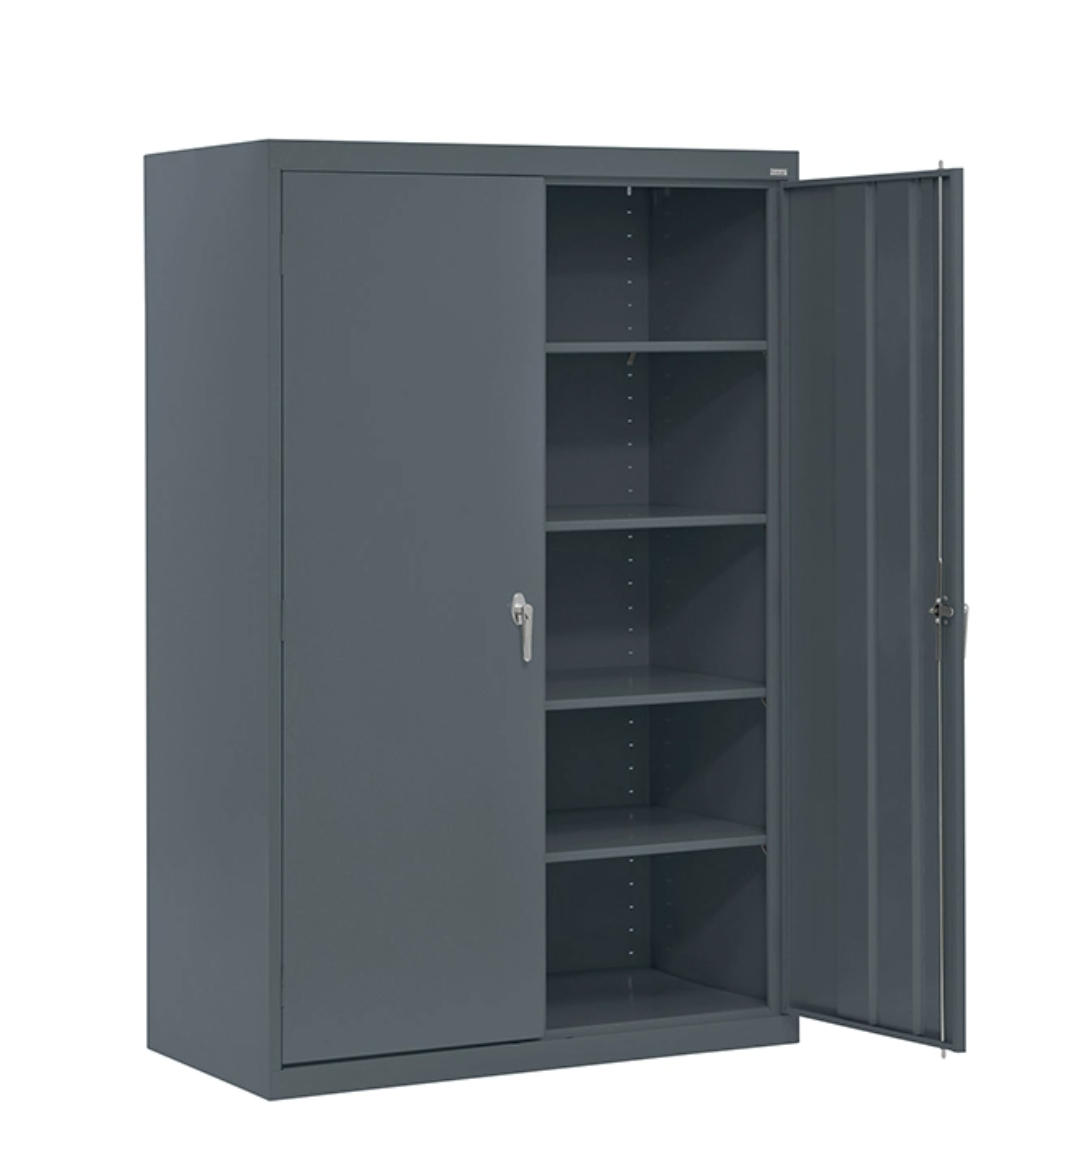 Hospital Storage Cabinet Furniture 5 Tier Garment Locker Design Steel Locked Armoire with Hidden Locker